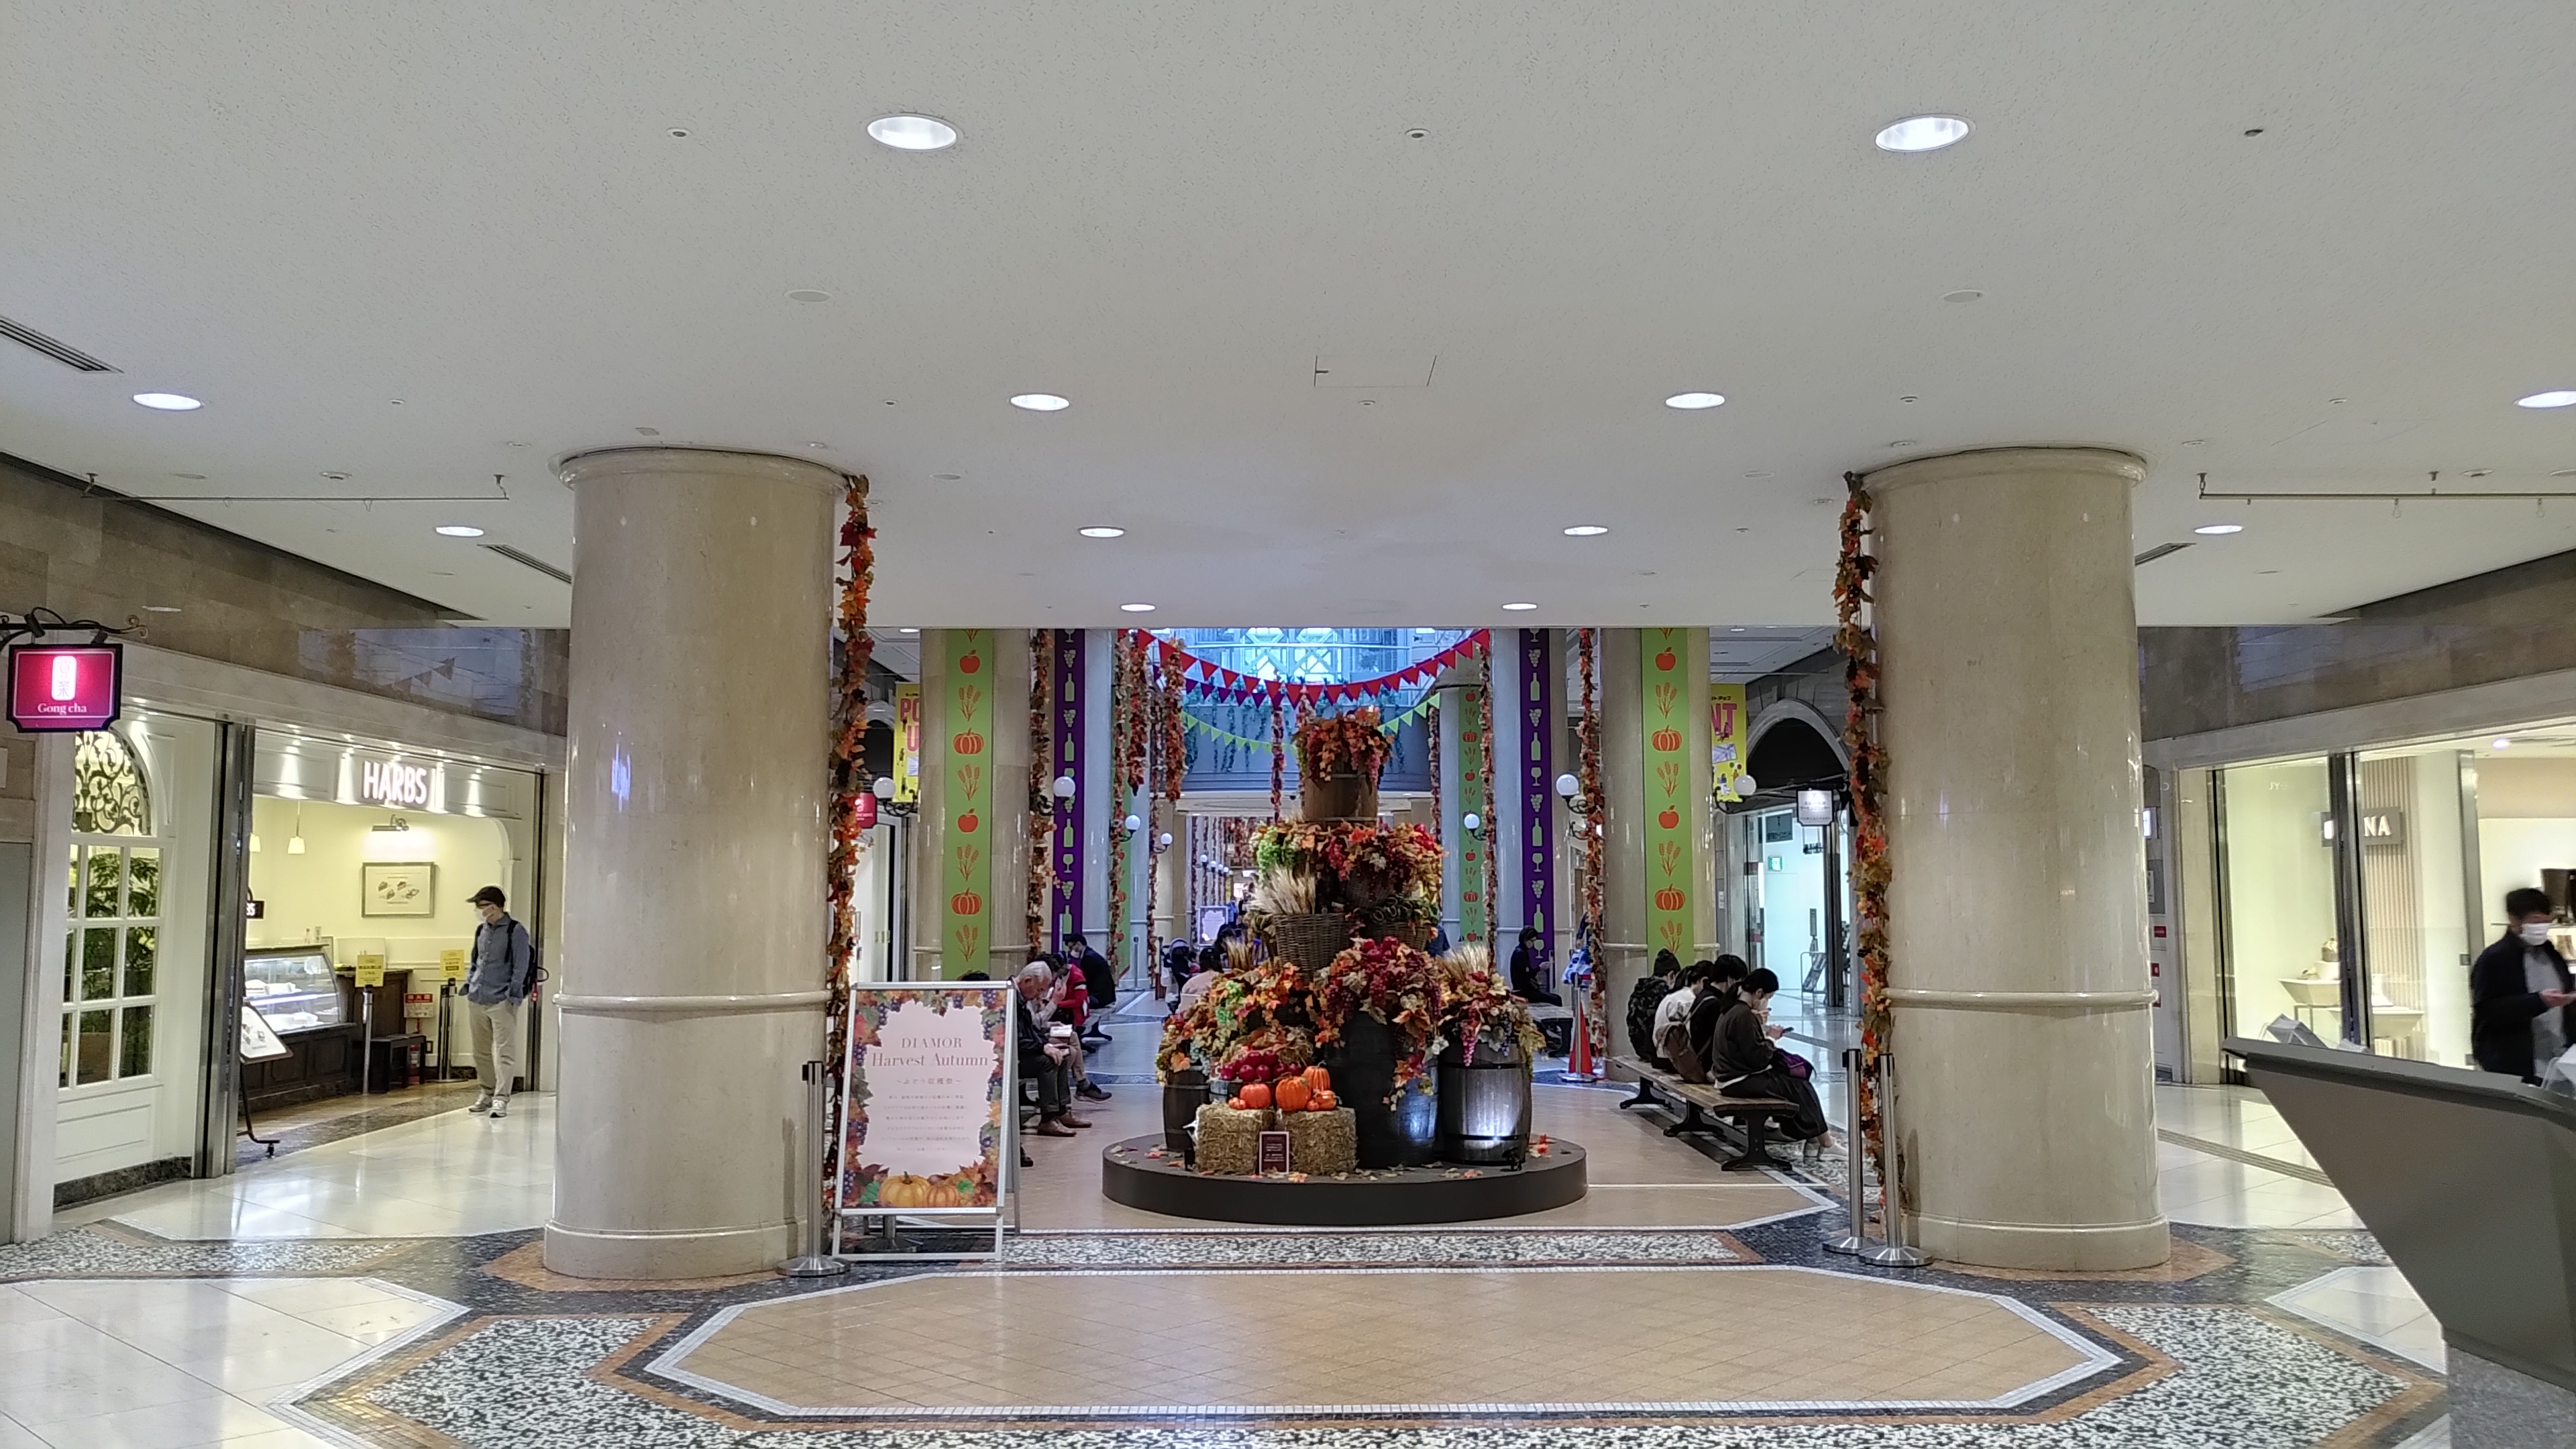 Unterirdische Shoppingmall: im Zentrum ein Arrangement aus Kürbissen und Herbstblumen eingerahmt von Bänken, auf denen Leute sitzen.